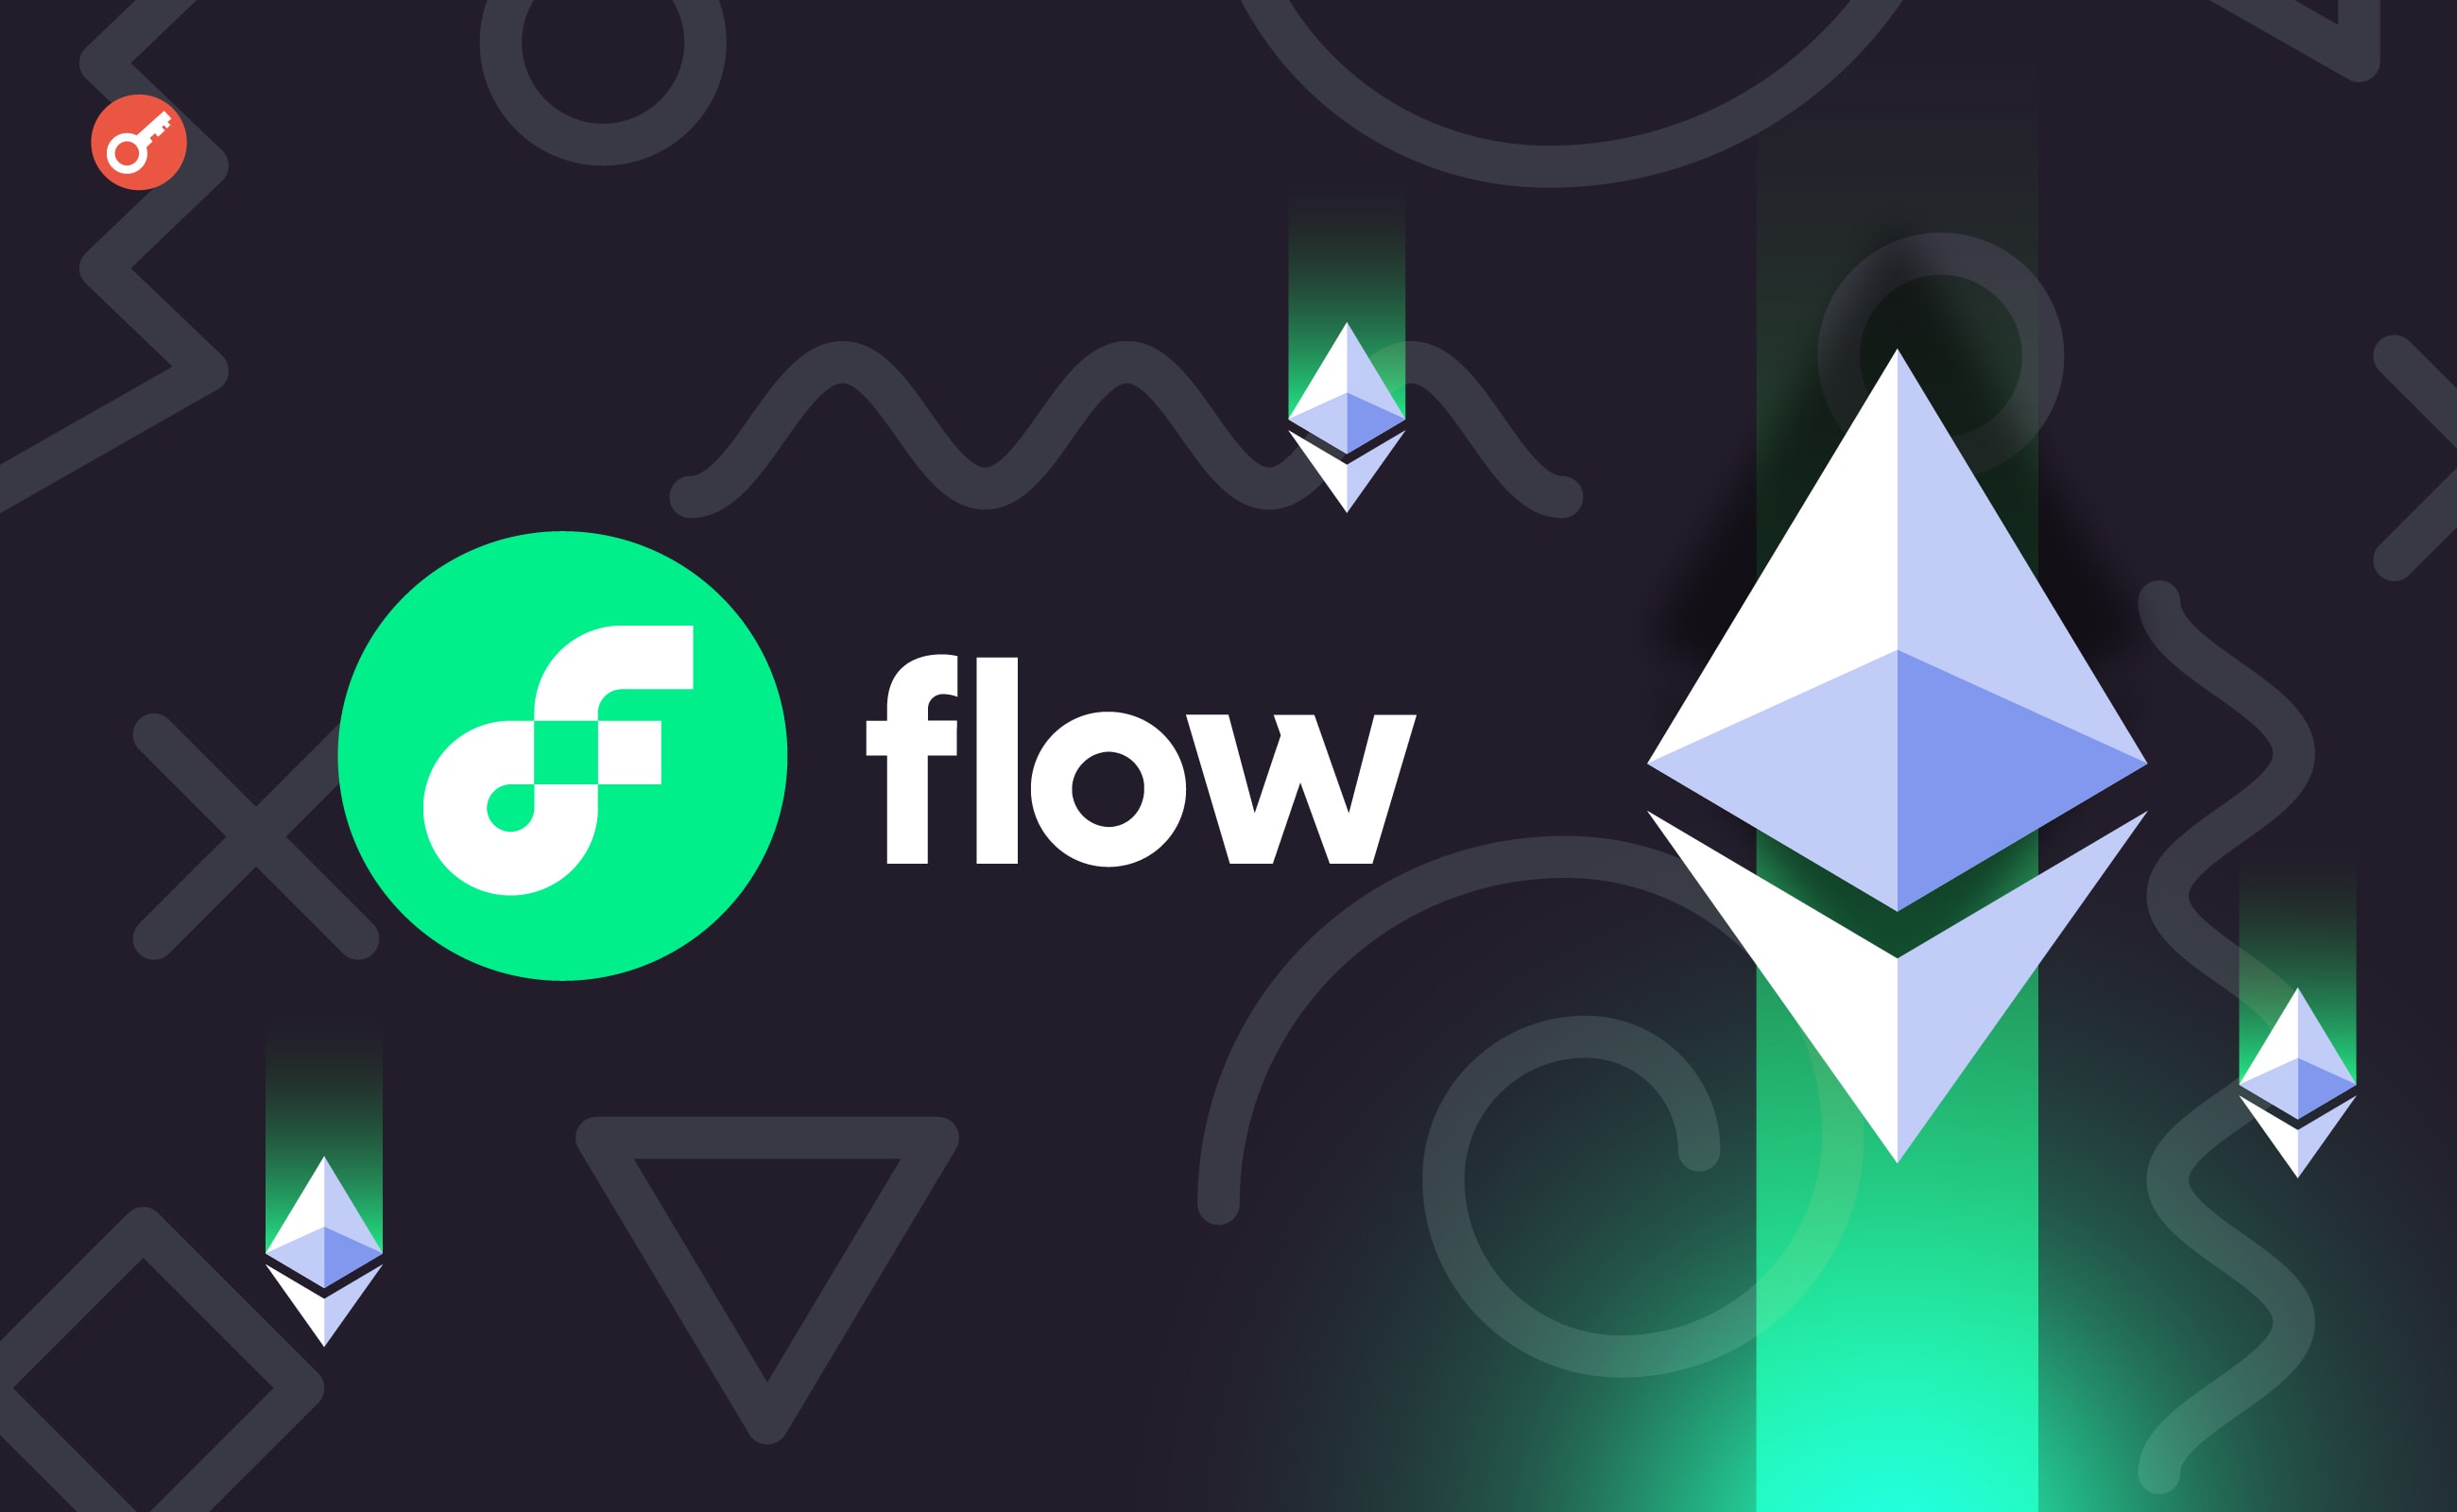 В сообществе Flow внесли предложение о развертывании приложений Ethereum. Заглавный коллаж новости.